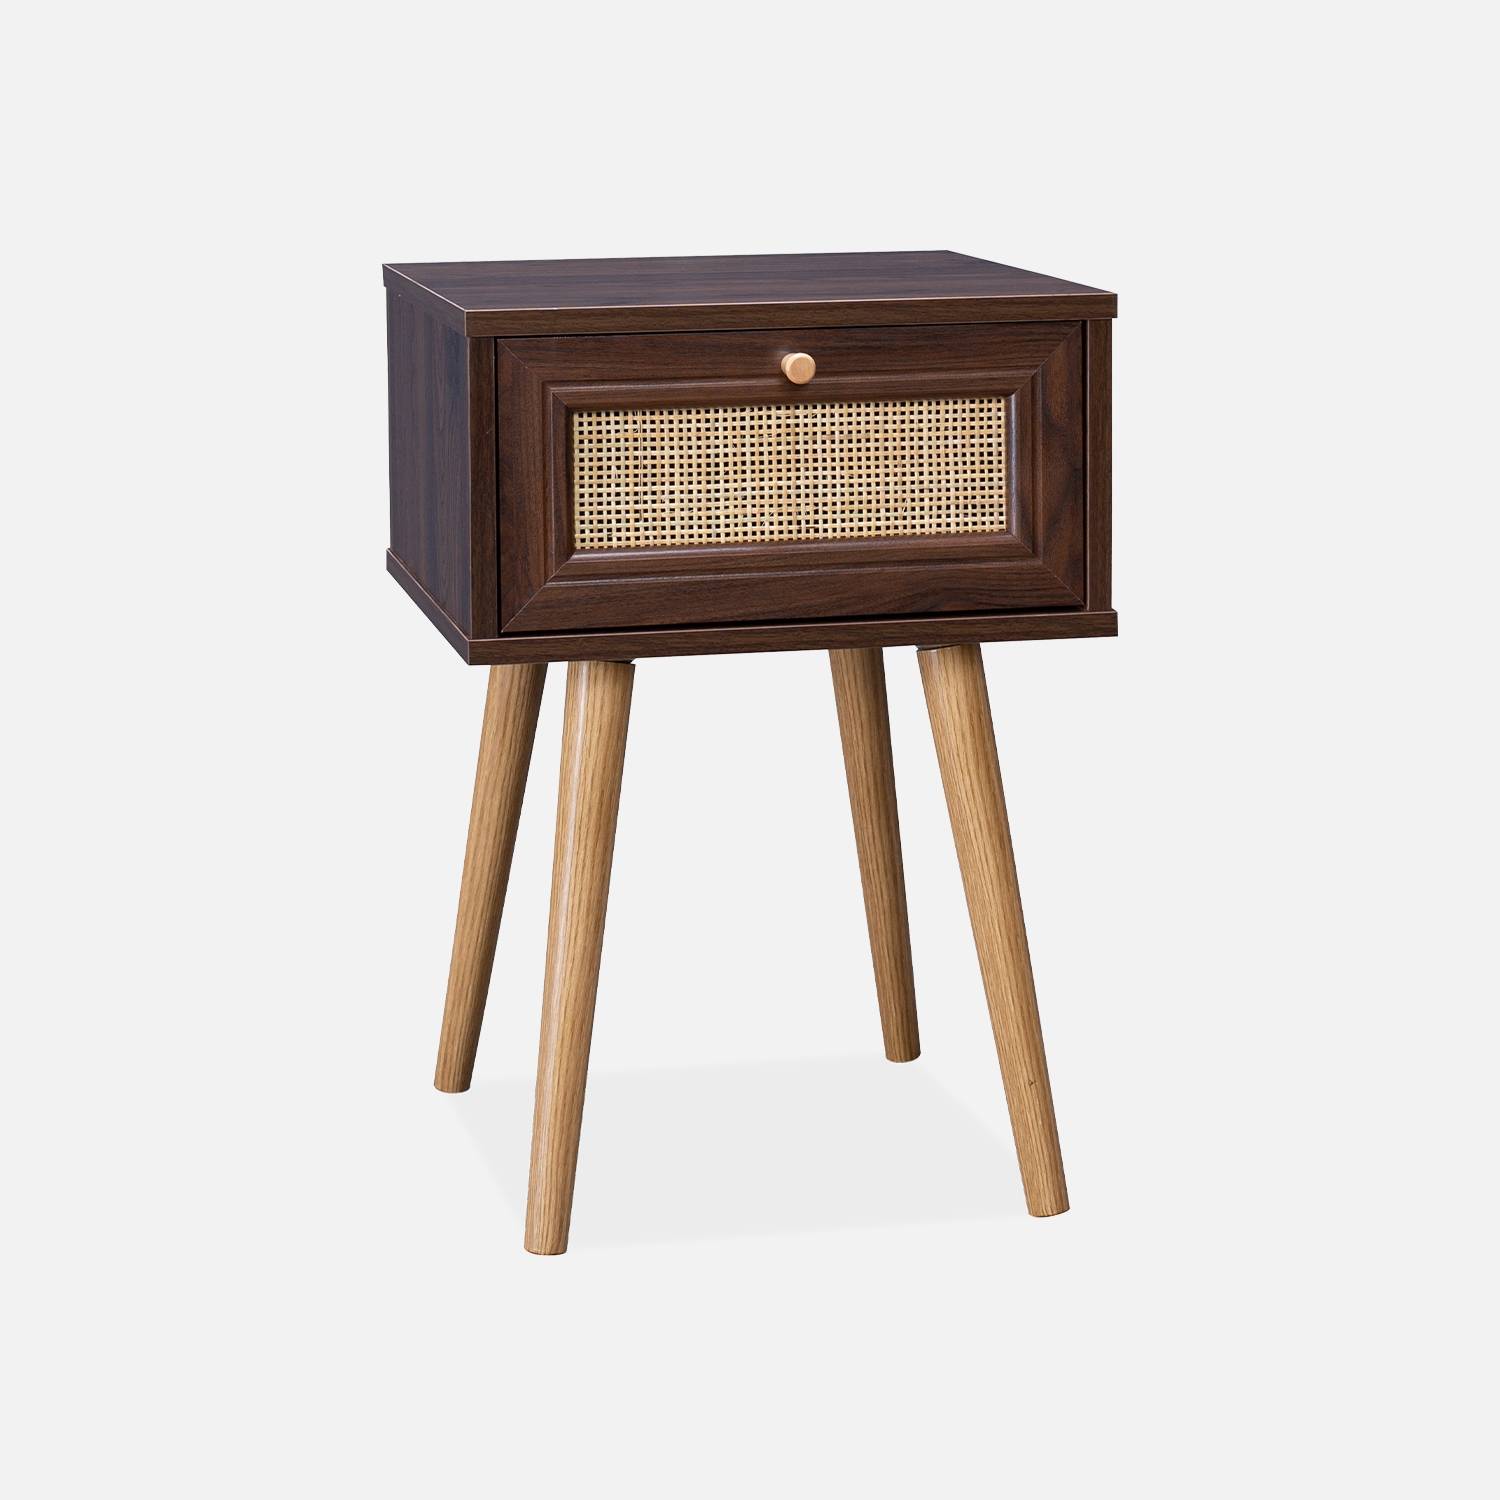 Mesa de cabeceira com efeito de madeira escura / cana 1 gaveta|sweeek